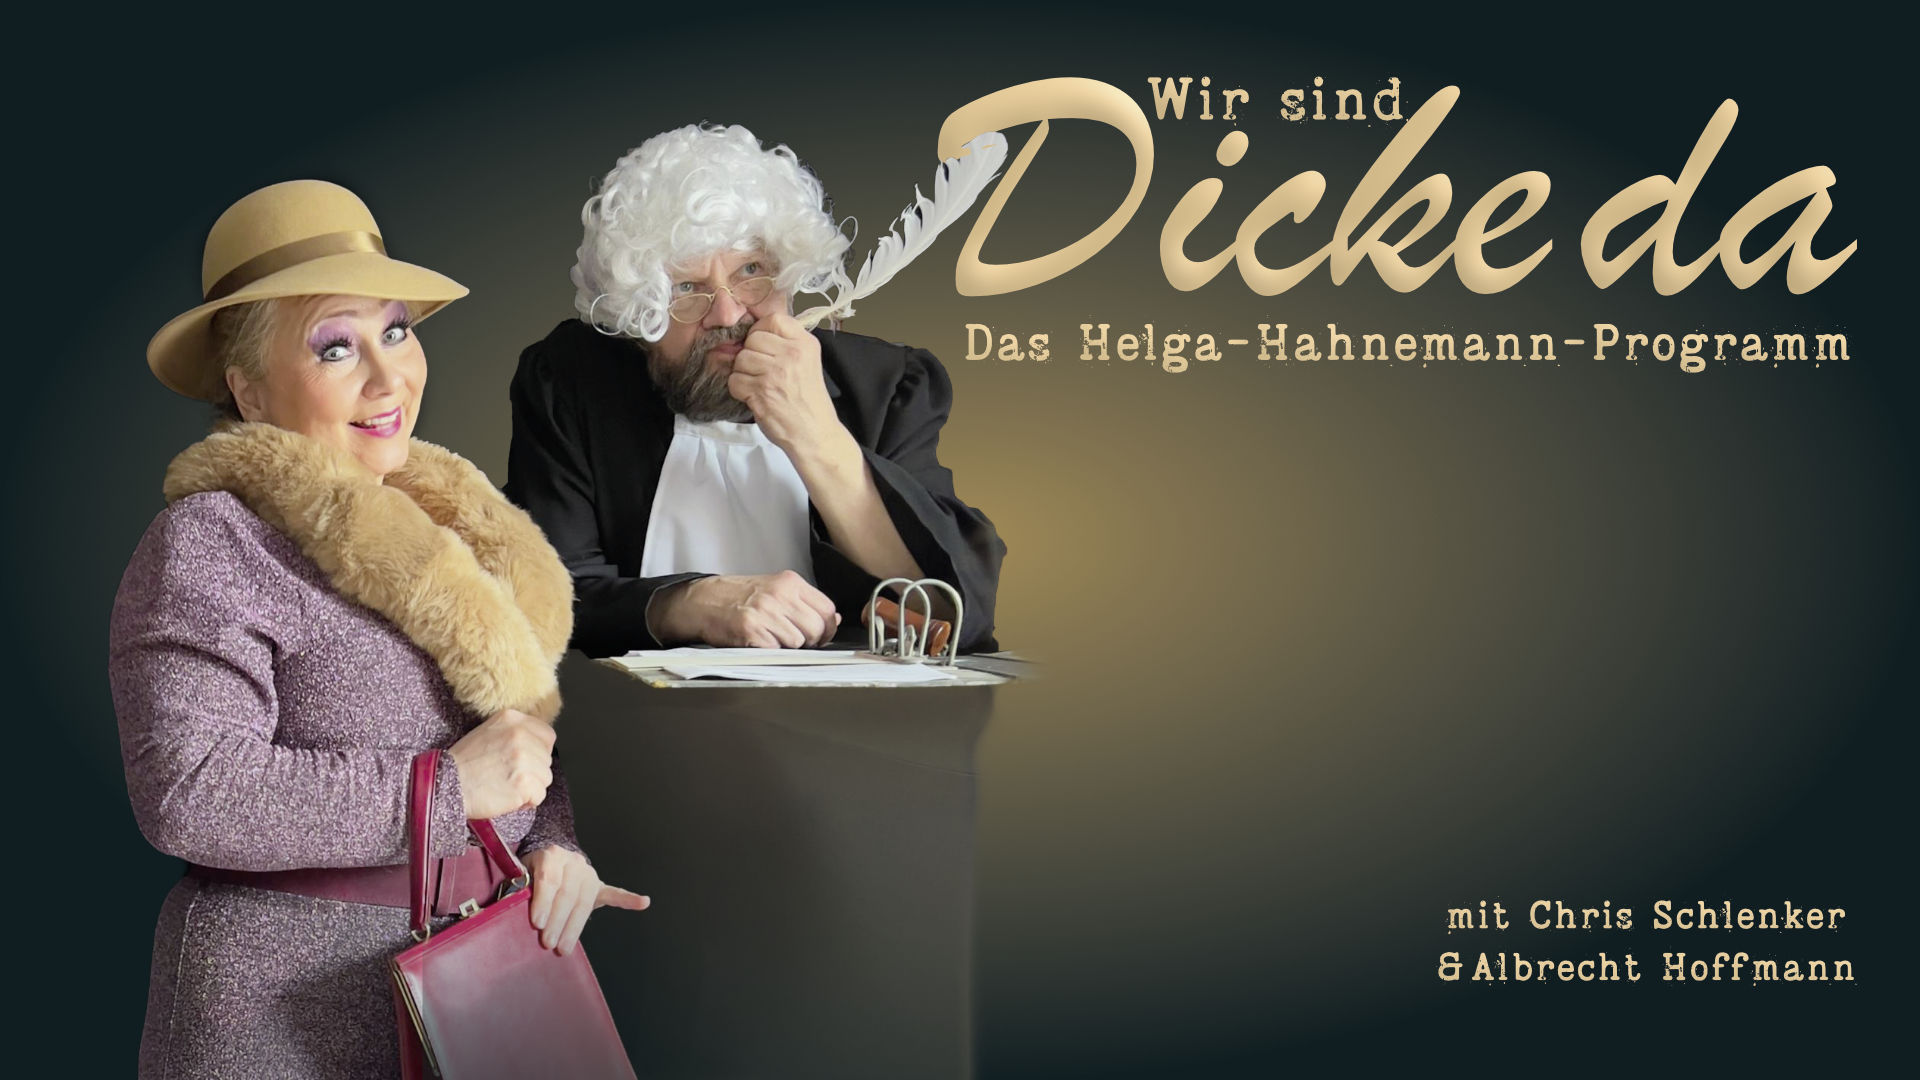 Wir sind Dicke da! von und mit Chris Schlenker und Albrecht Hoffmann im Altstadttheater Köpenick